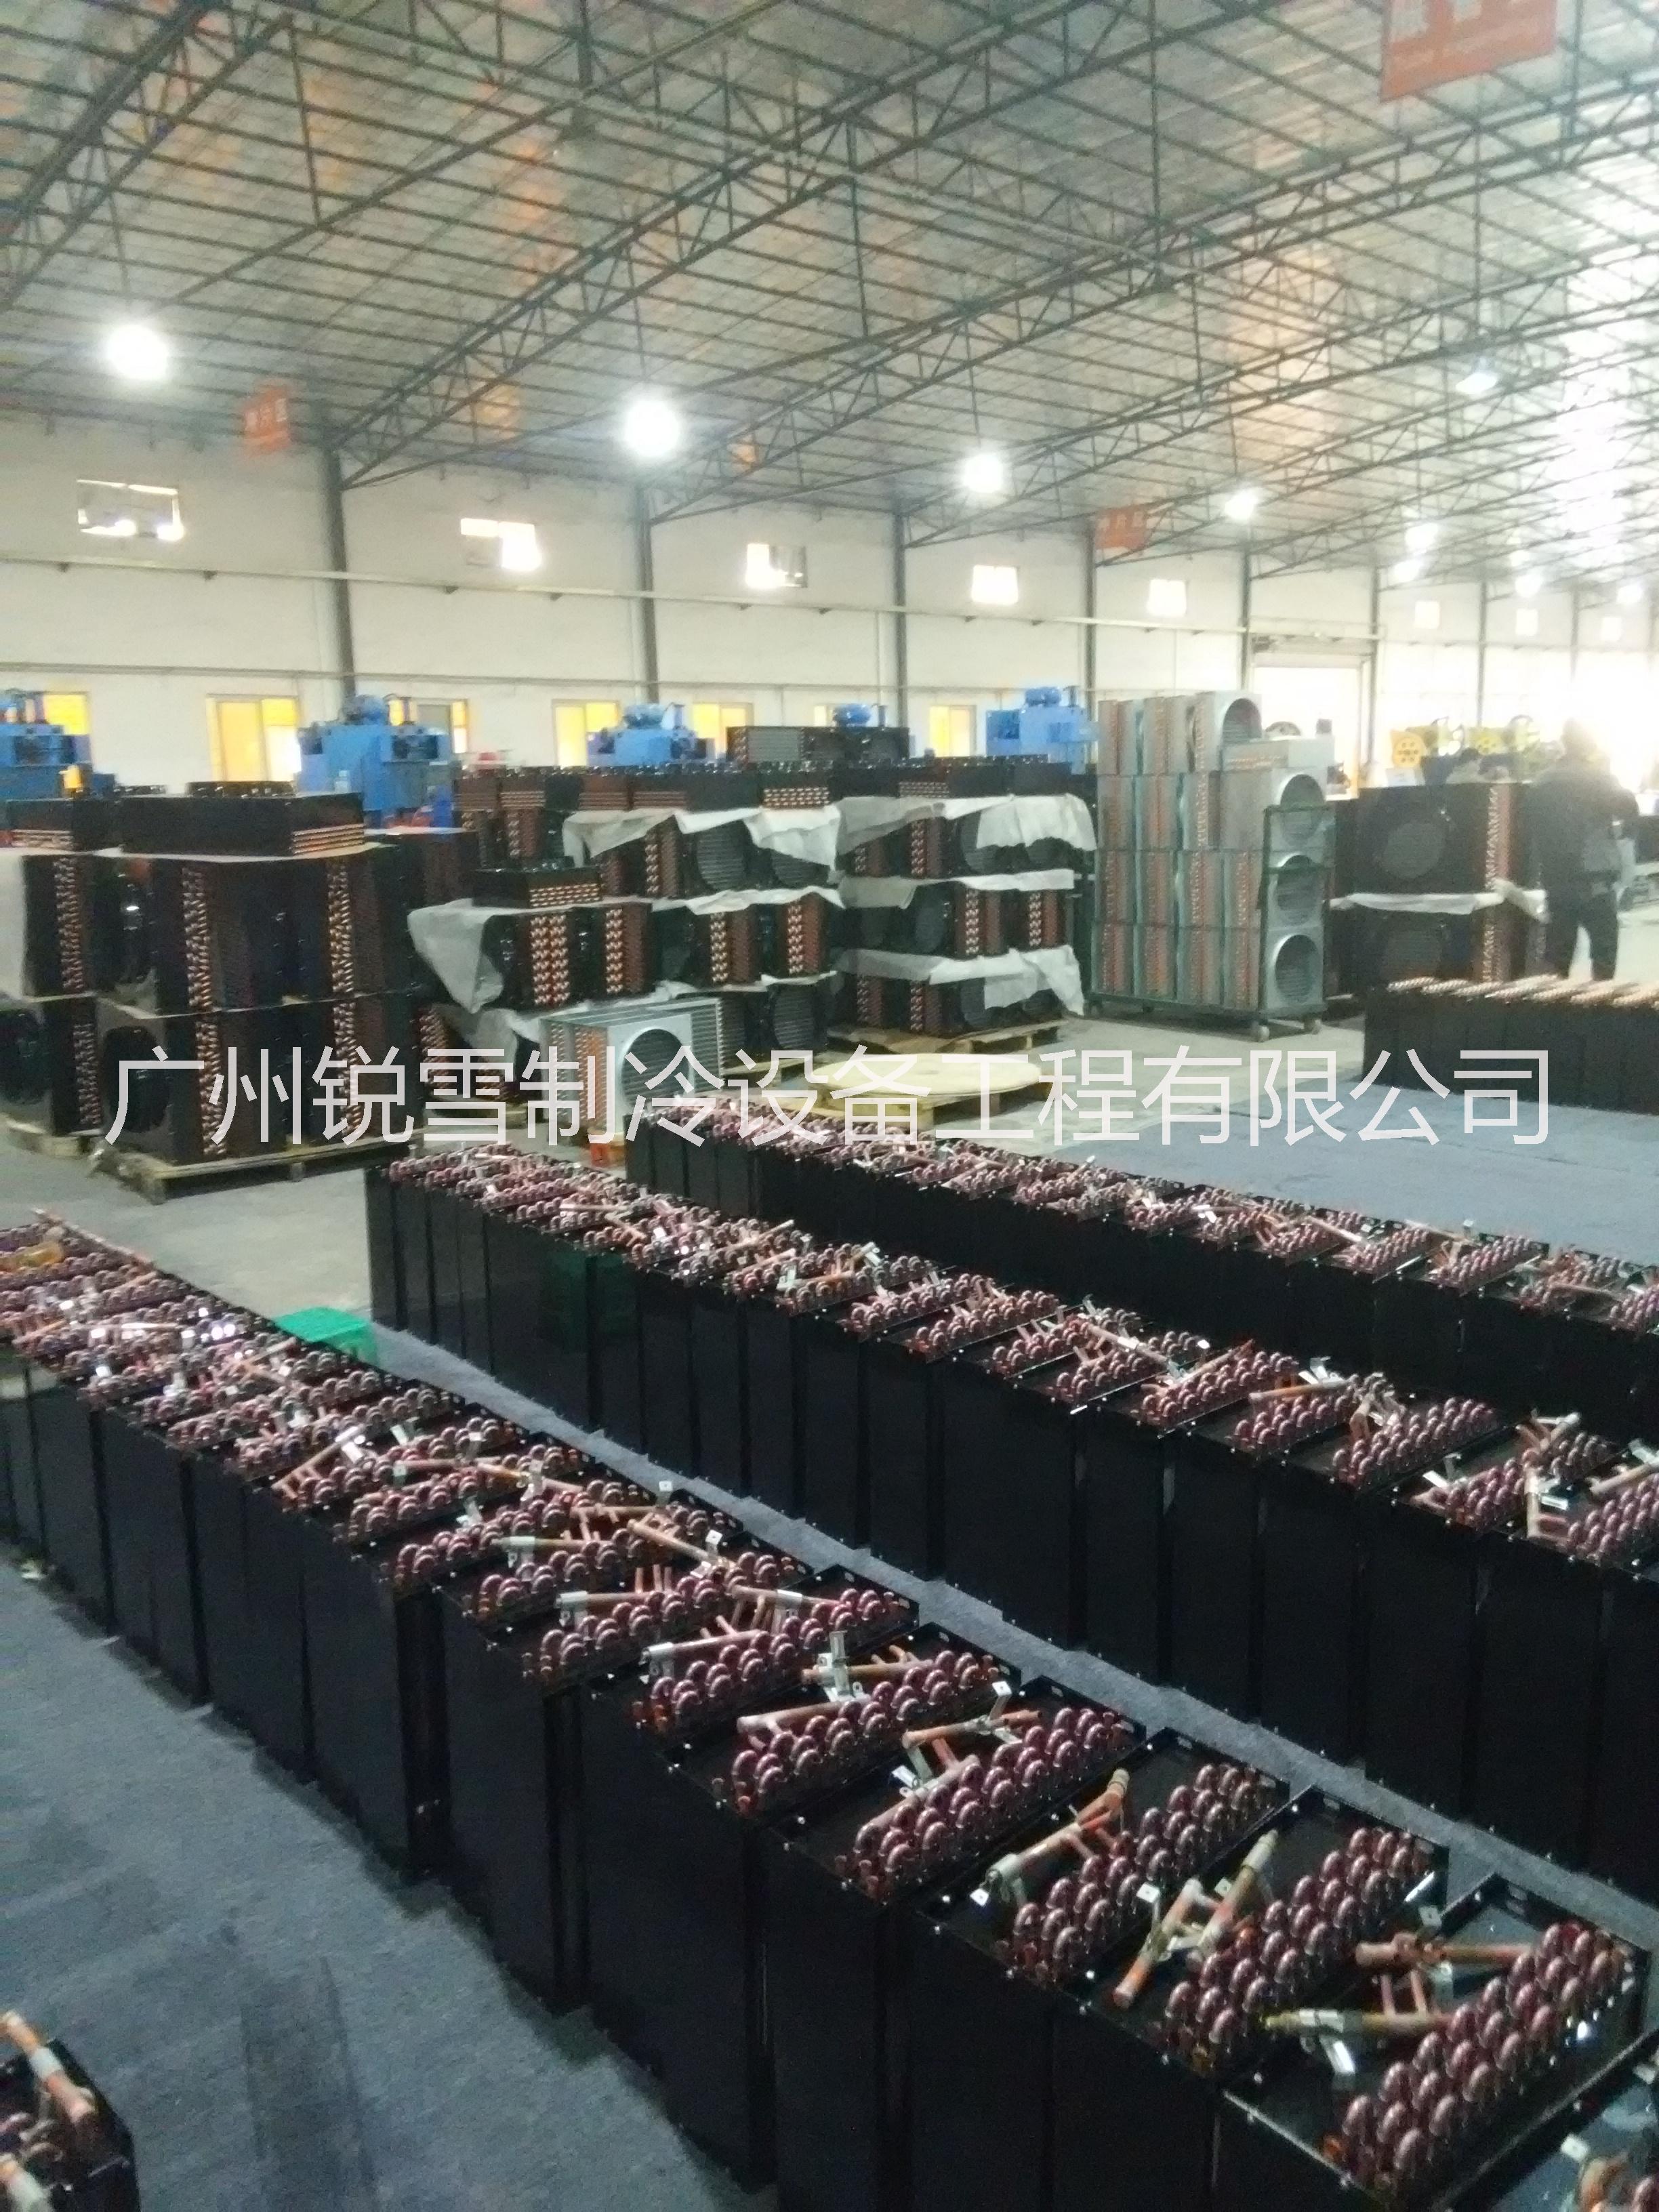 广州市制冷设备生产厂家制冷设备 制冷设备生产制冷设备安装销售维护